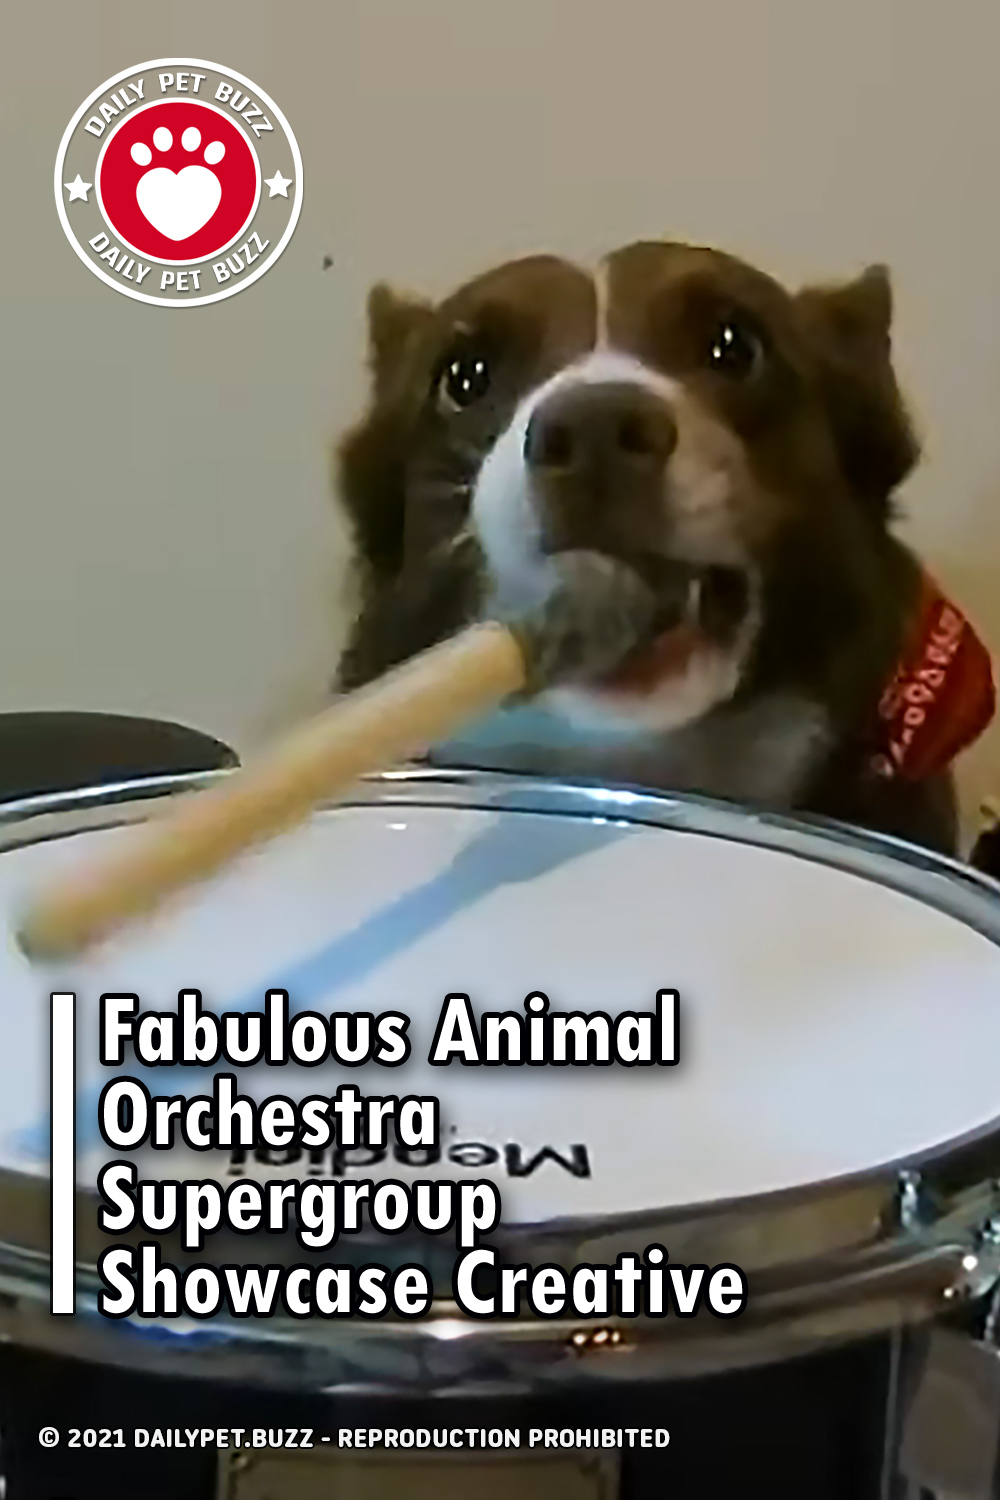 Fabulous Animal Orchestra Supergroup Showcase Creative